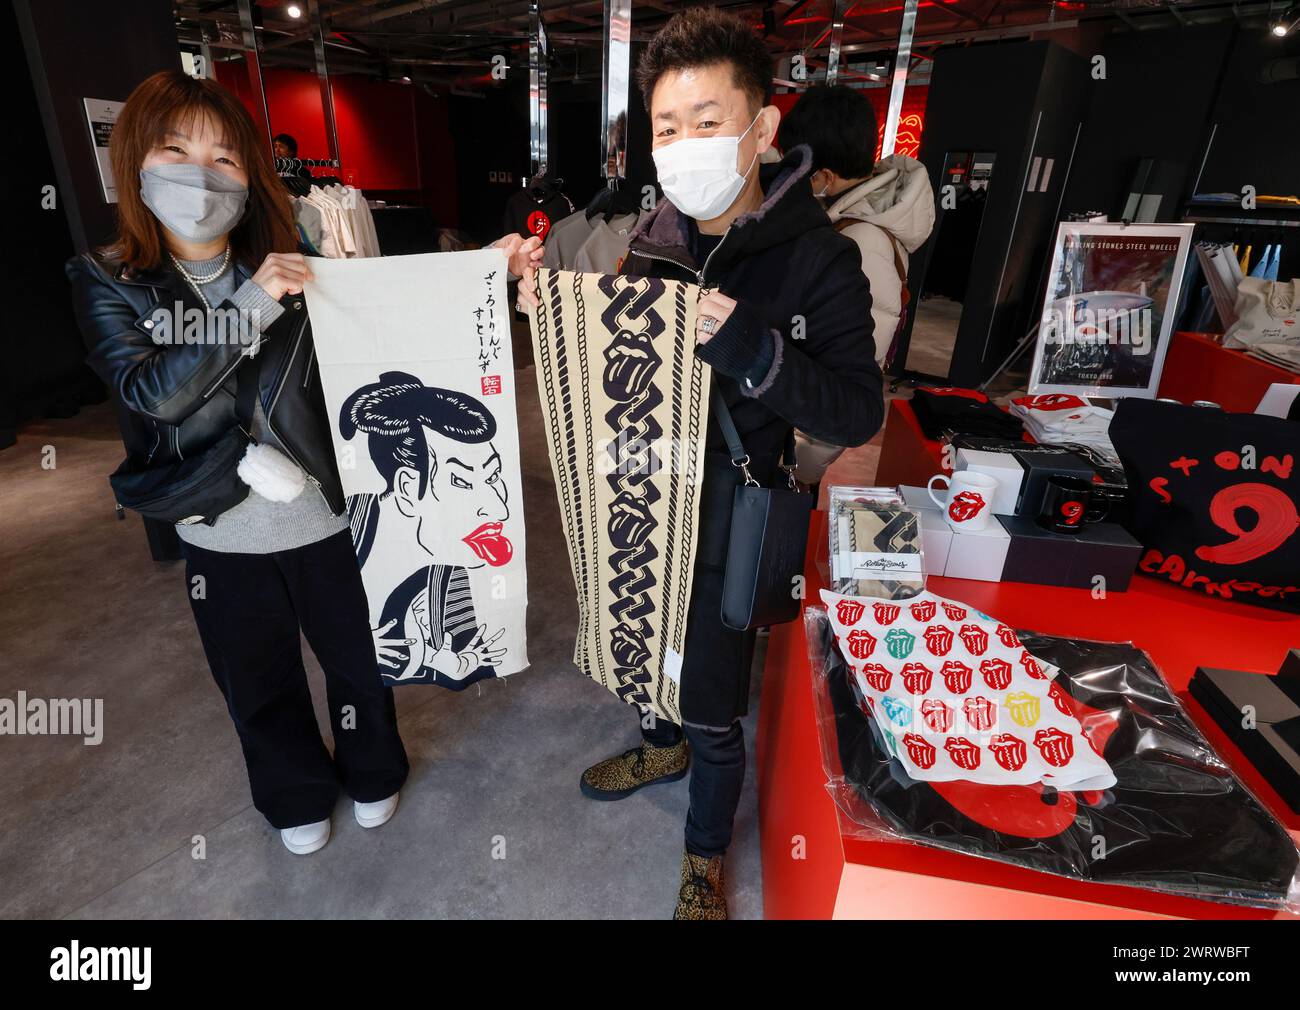 L'ABBIGLIAMENTO UFFICIALE RS NO.9 DI ROLLING STONES A TOKYO Foto Stock